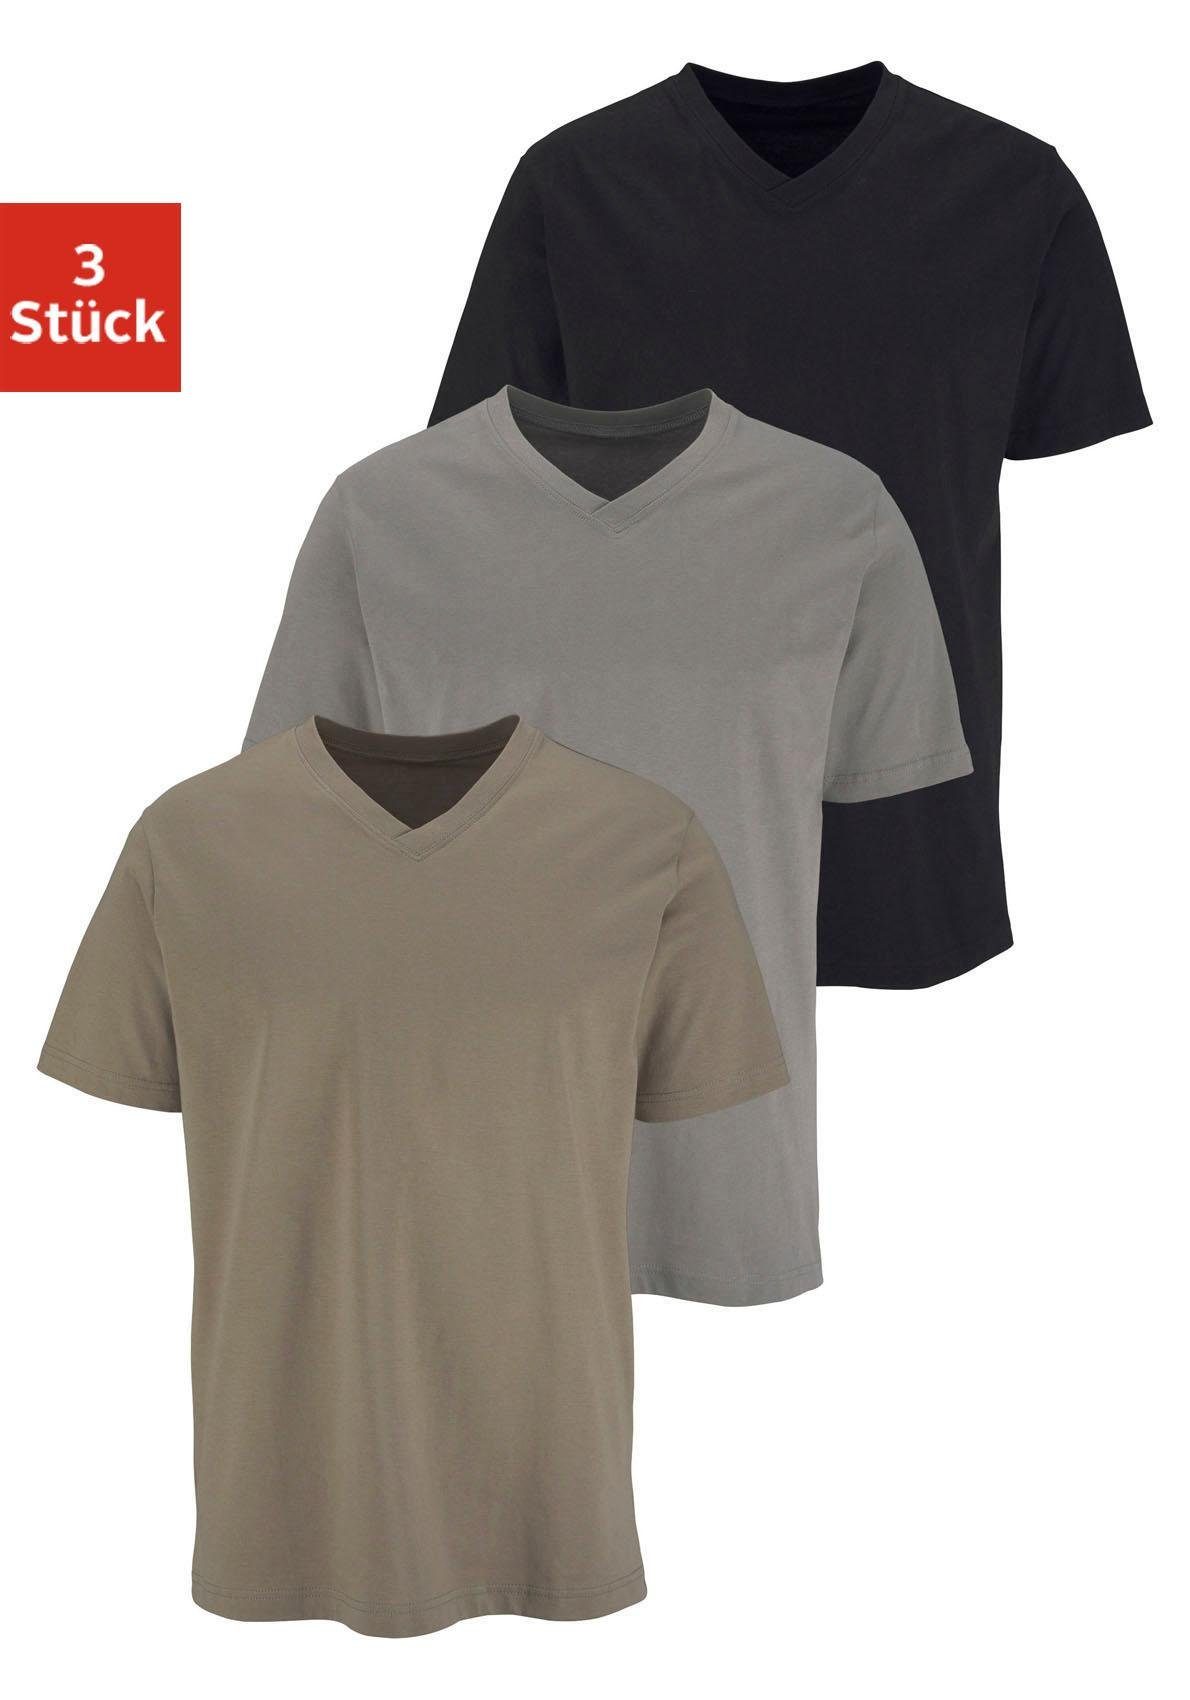 shengli Herren Sommer T-Shirt Shirt Kurzarm Hemd Knopfleiste V-Ausschnitt Tiefem Ausschnitt Slim Fit Kurzarm-Sweatshirt Unterhemd S-5XL